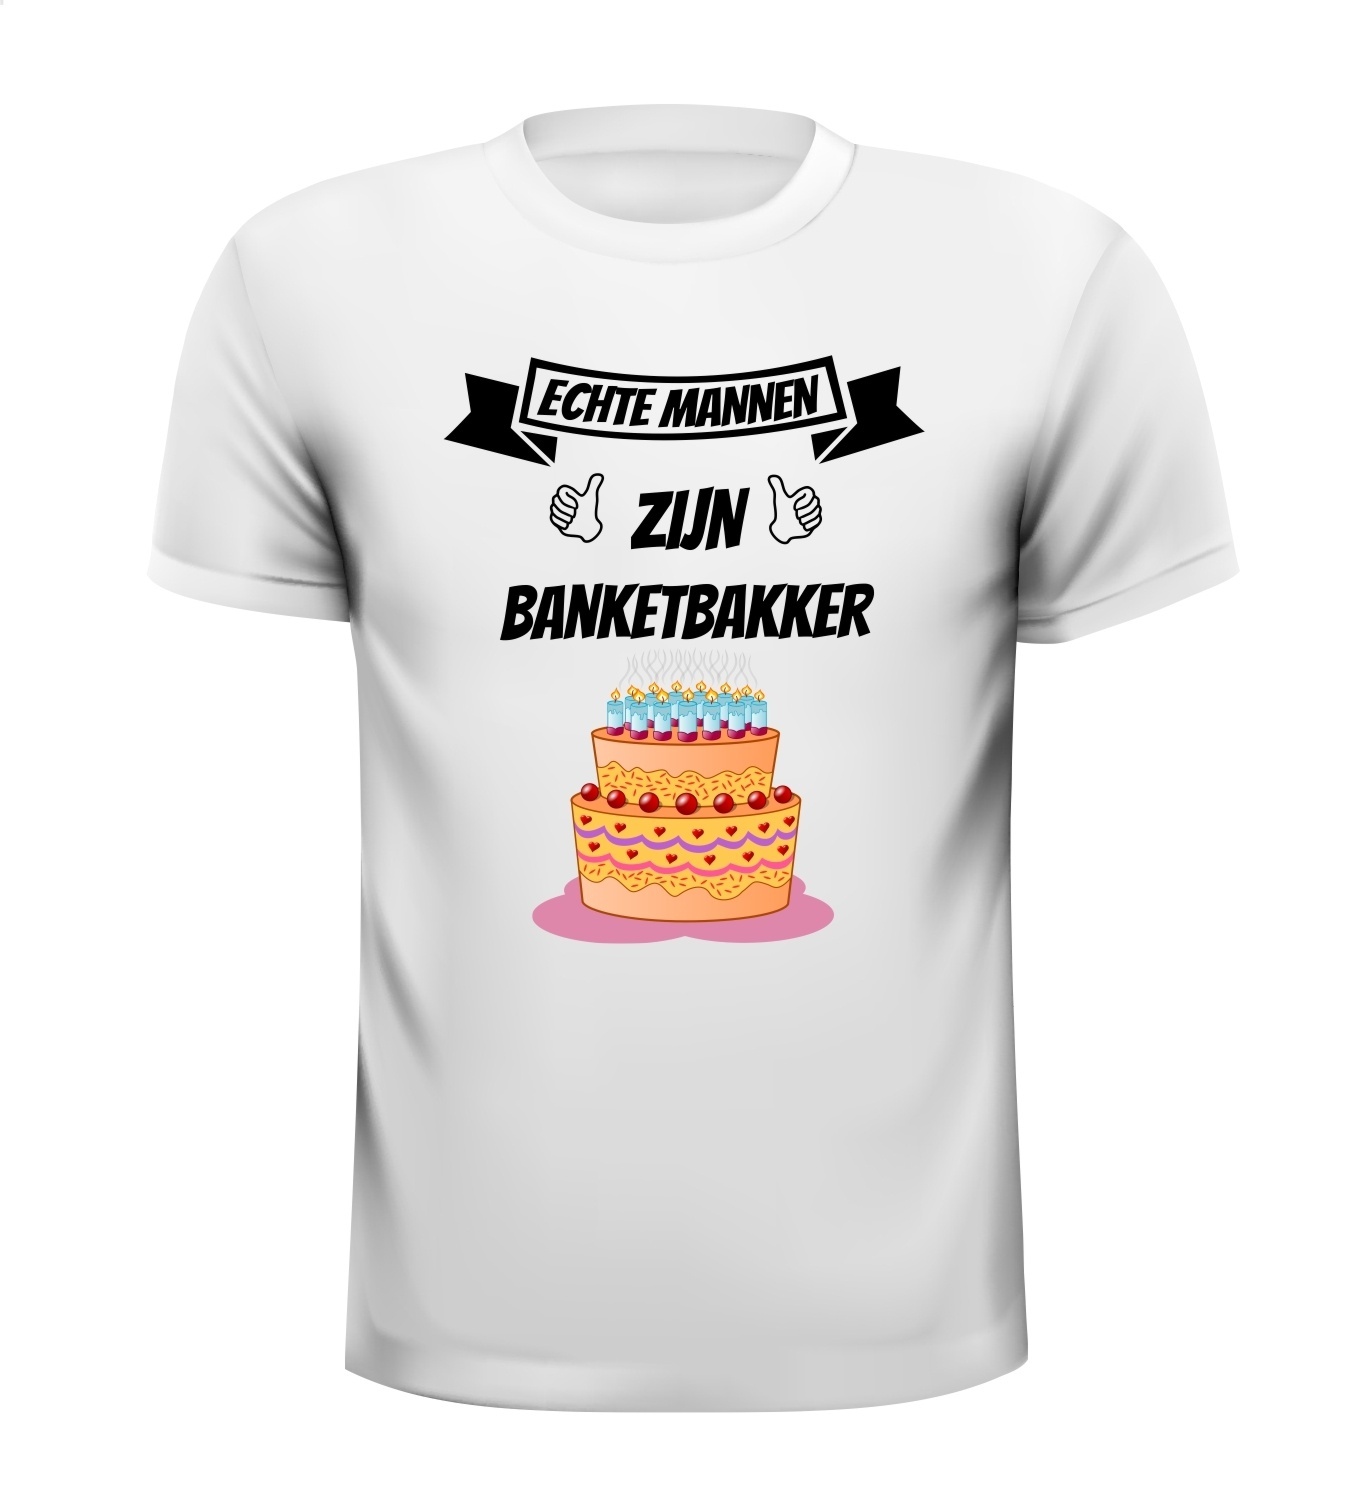 Echte mannen zijn banketbakker T-shirt taart verjaardag grappig bakker